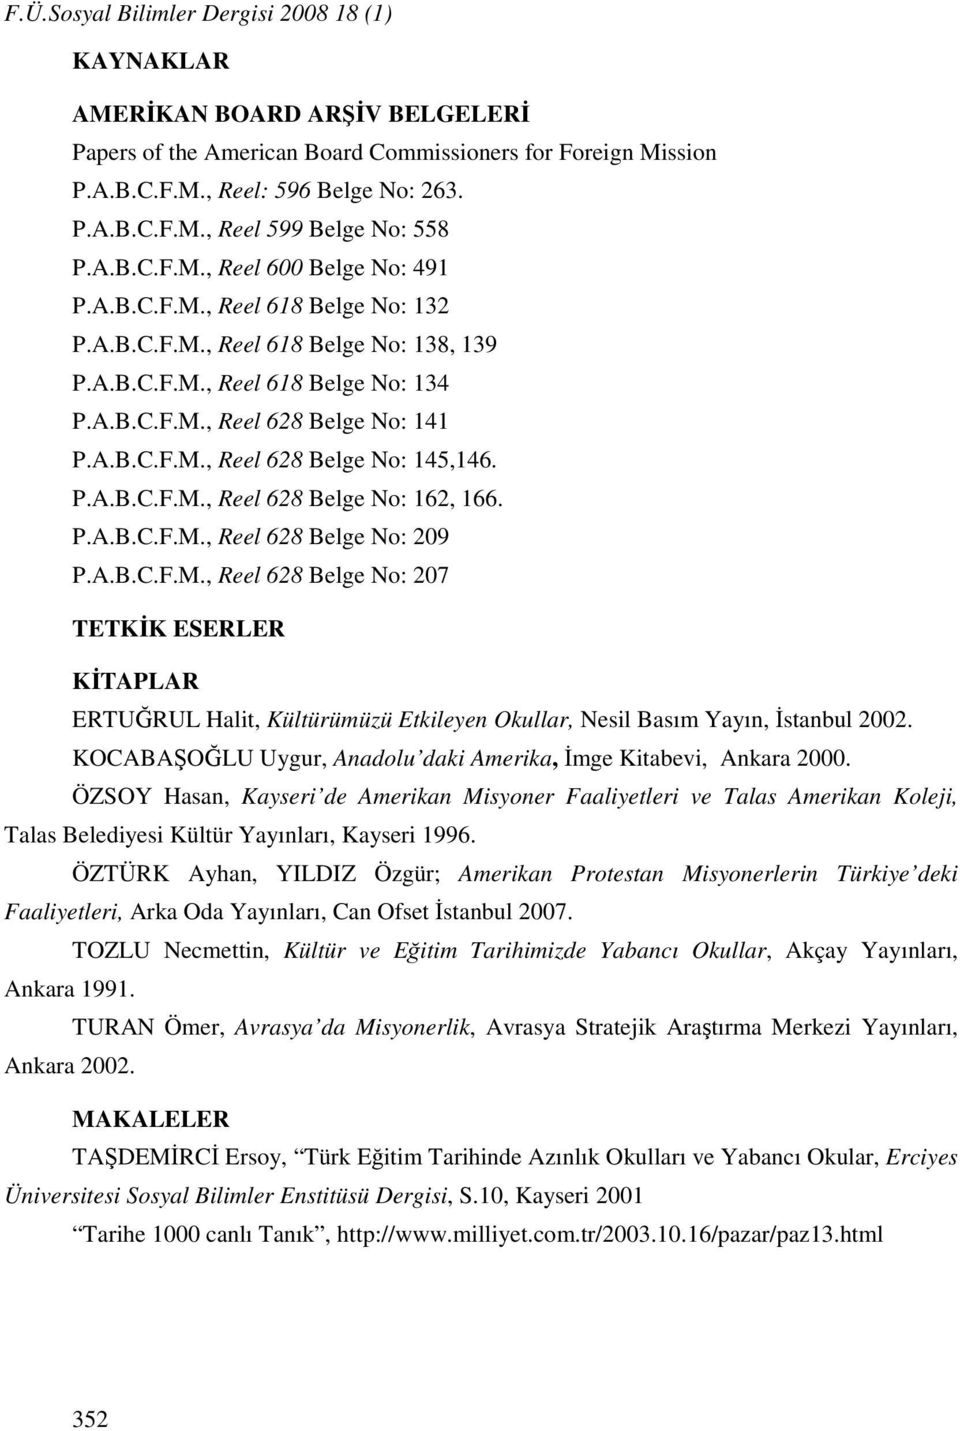 P.A.B.C.F.M., Reel 628 Belge No: 162, 166. P.A.B.C.F.M., Reel 628 Belge No: 209 P.A.B.C.F.M., Reel 628 Belge No: 207 TETKİK ESERLER KİTAPLAR ERTUĞRUL Halit, Kültürümüzü Etkileyen Okullar, Nesil Basım Yayın, İstanbul 2002.